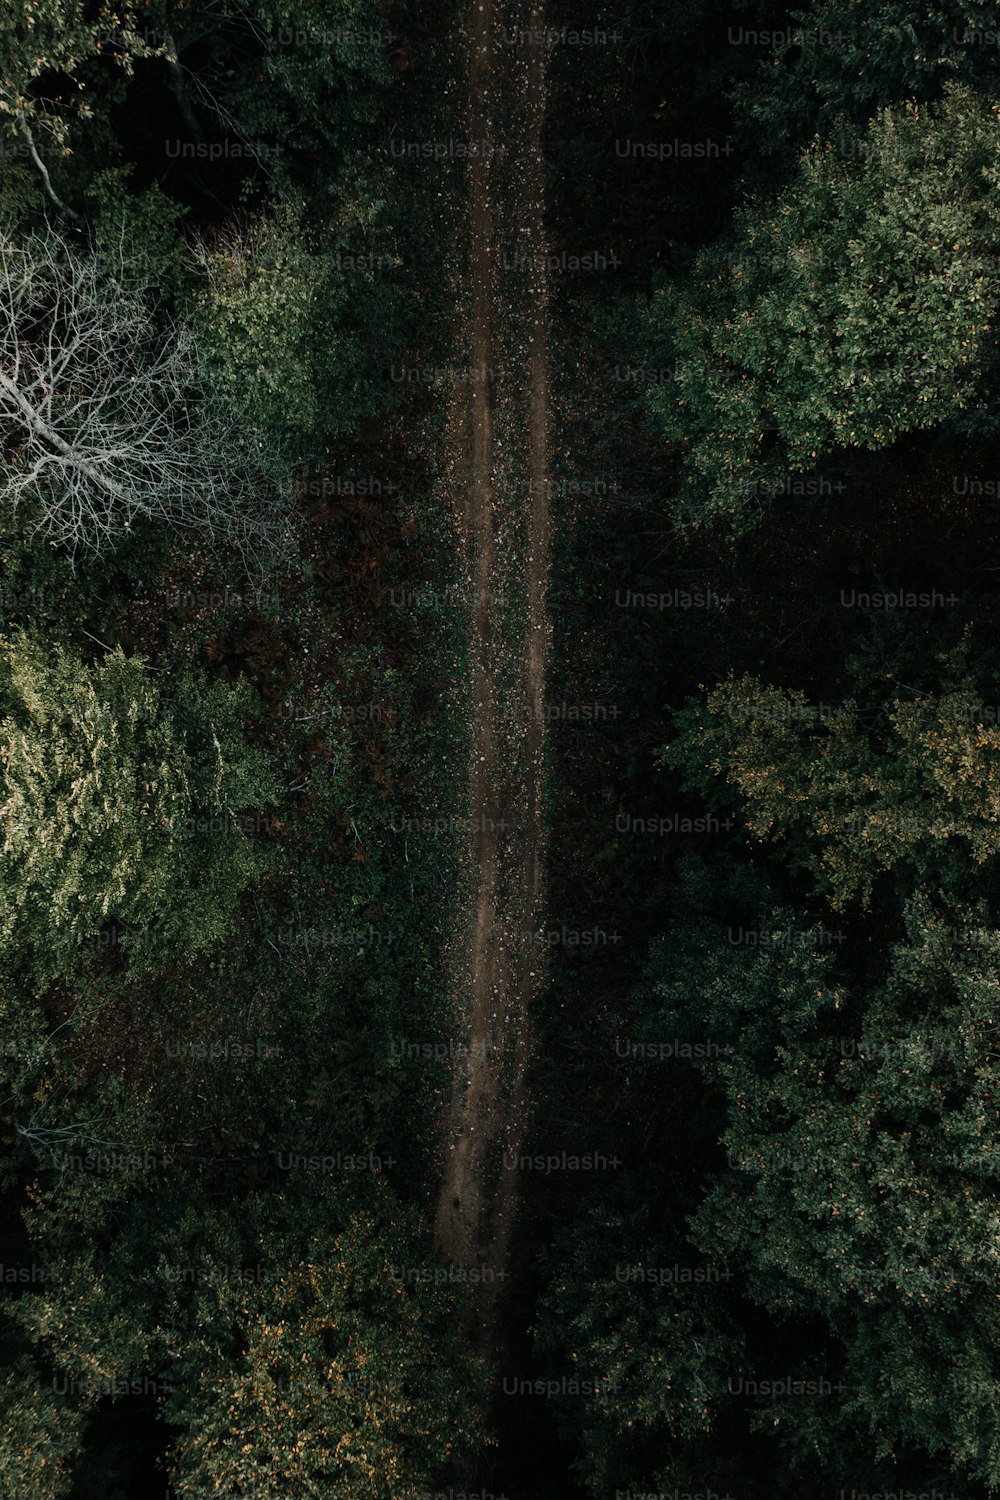 Un chemin de terre au milieu d’une forêt